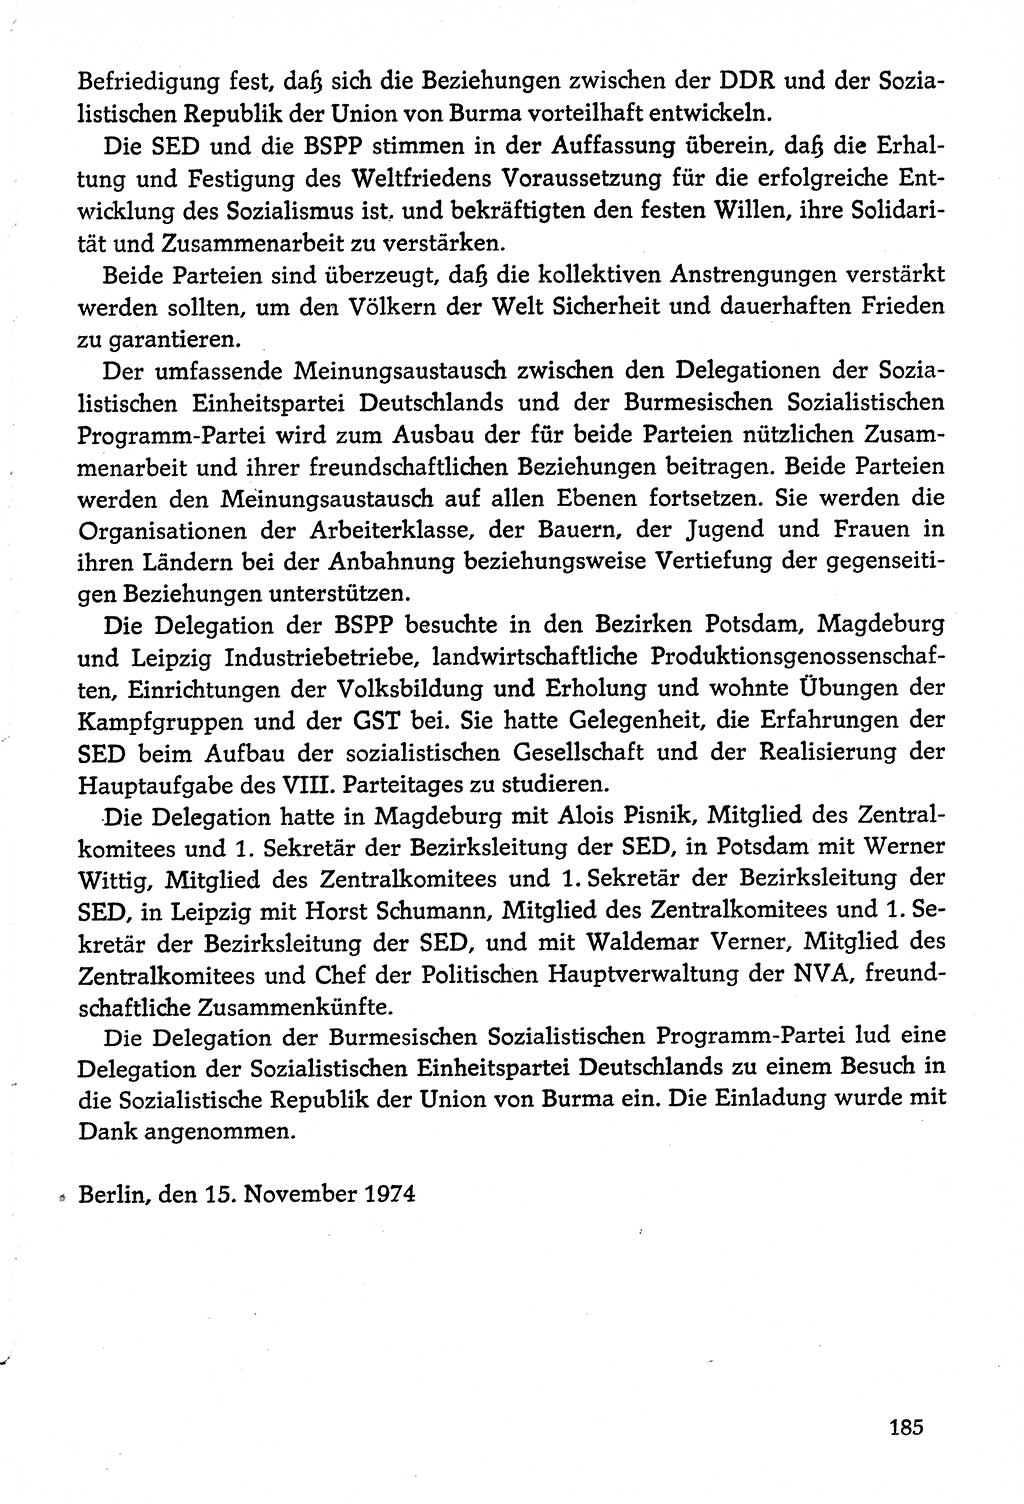 Dokumente der Sozialistischen Einheitspartei Deutschlands (SED) [Deutsche Demokratische Republik (DDR)] 1974-1975, Seite 185 (Dok. SED DDR 1978, Bd. ⅩⅤ, S. 185)